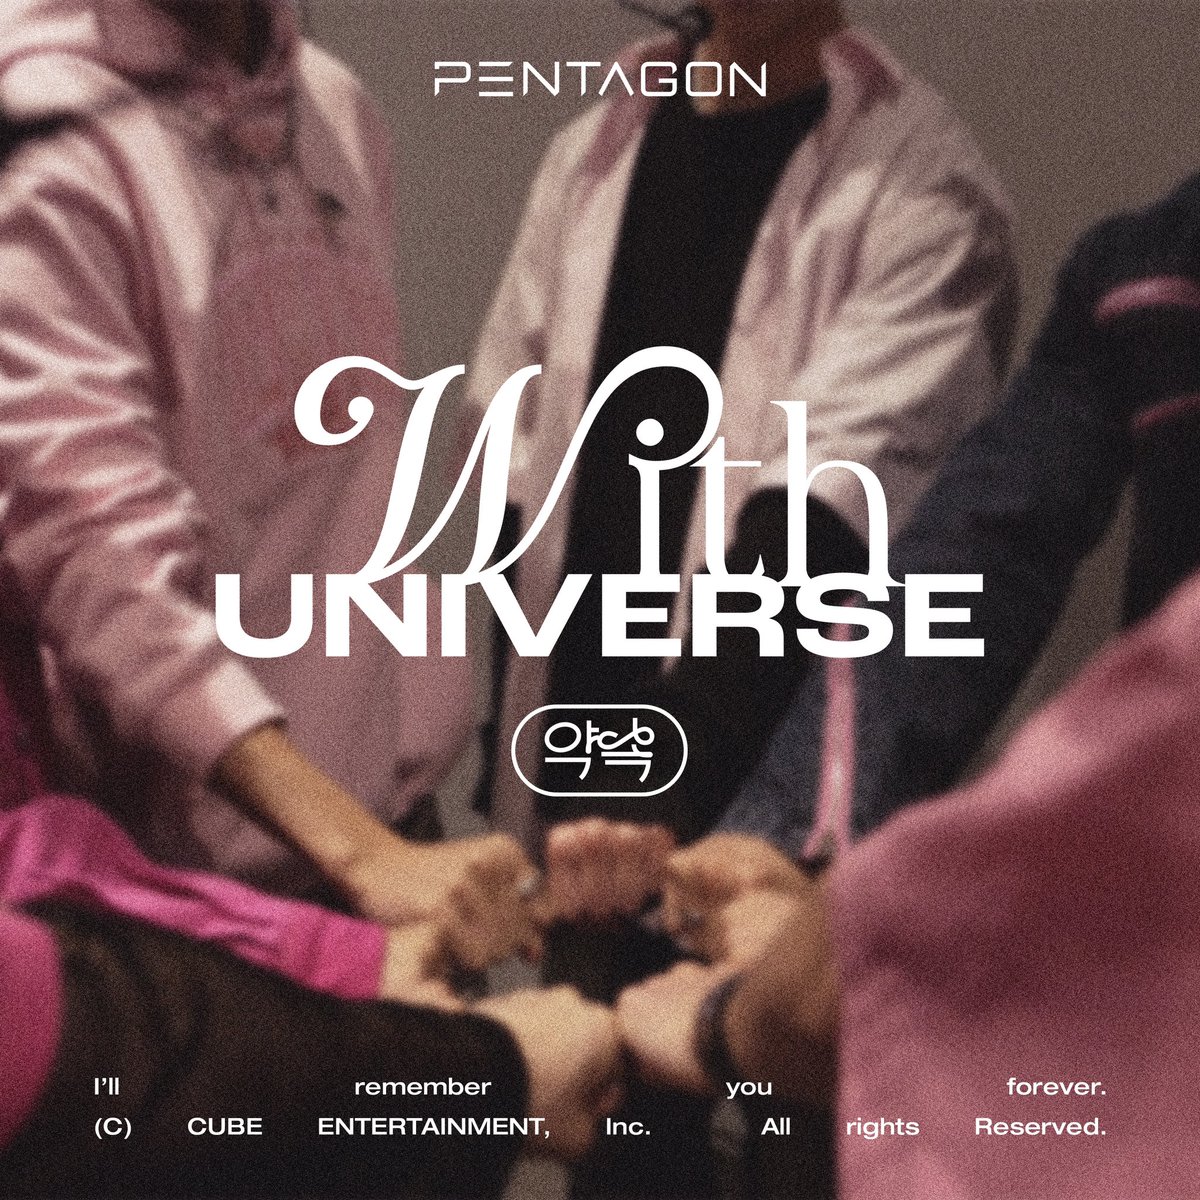 [🎧] 펜타곤의 Digital Single [약속]이 발매되었습니다. 지금 전 온라인 음원사이트에서 만나보세요 🌌 ▶ kko.to/q15uoNe0Sr #펜타곤 #PENTAGON #약속 #WithUNIVERSE